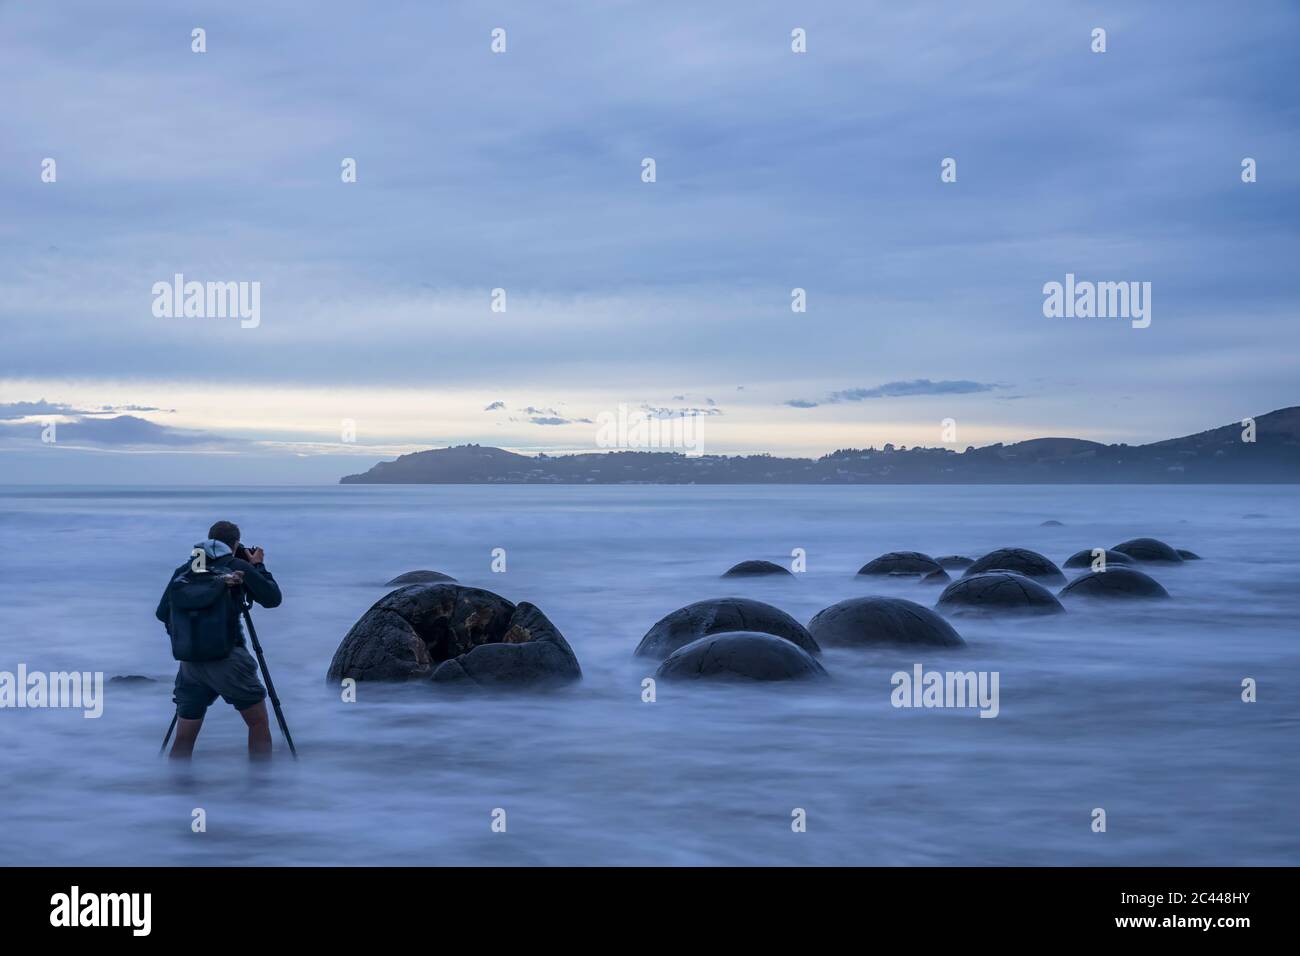 New Zealand, Oceania, South Island, Southland, Hampden, Otago, Moeraki, Koekohe Beach, Moeraki Boulders Beach, Moeraki Boulders, Man photographing round stones on beach at dusk Stock Photo